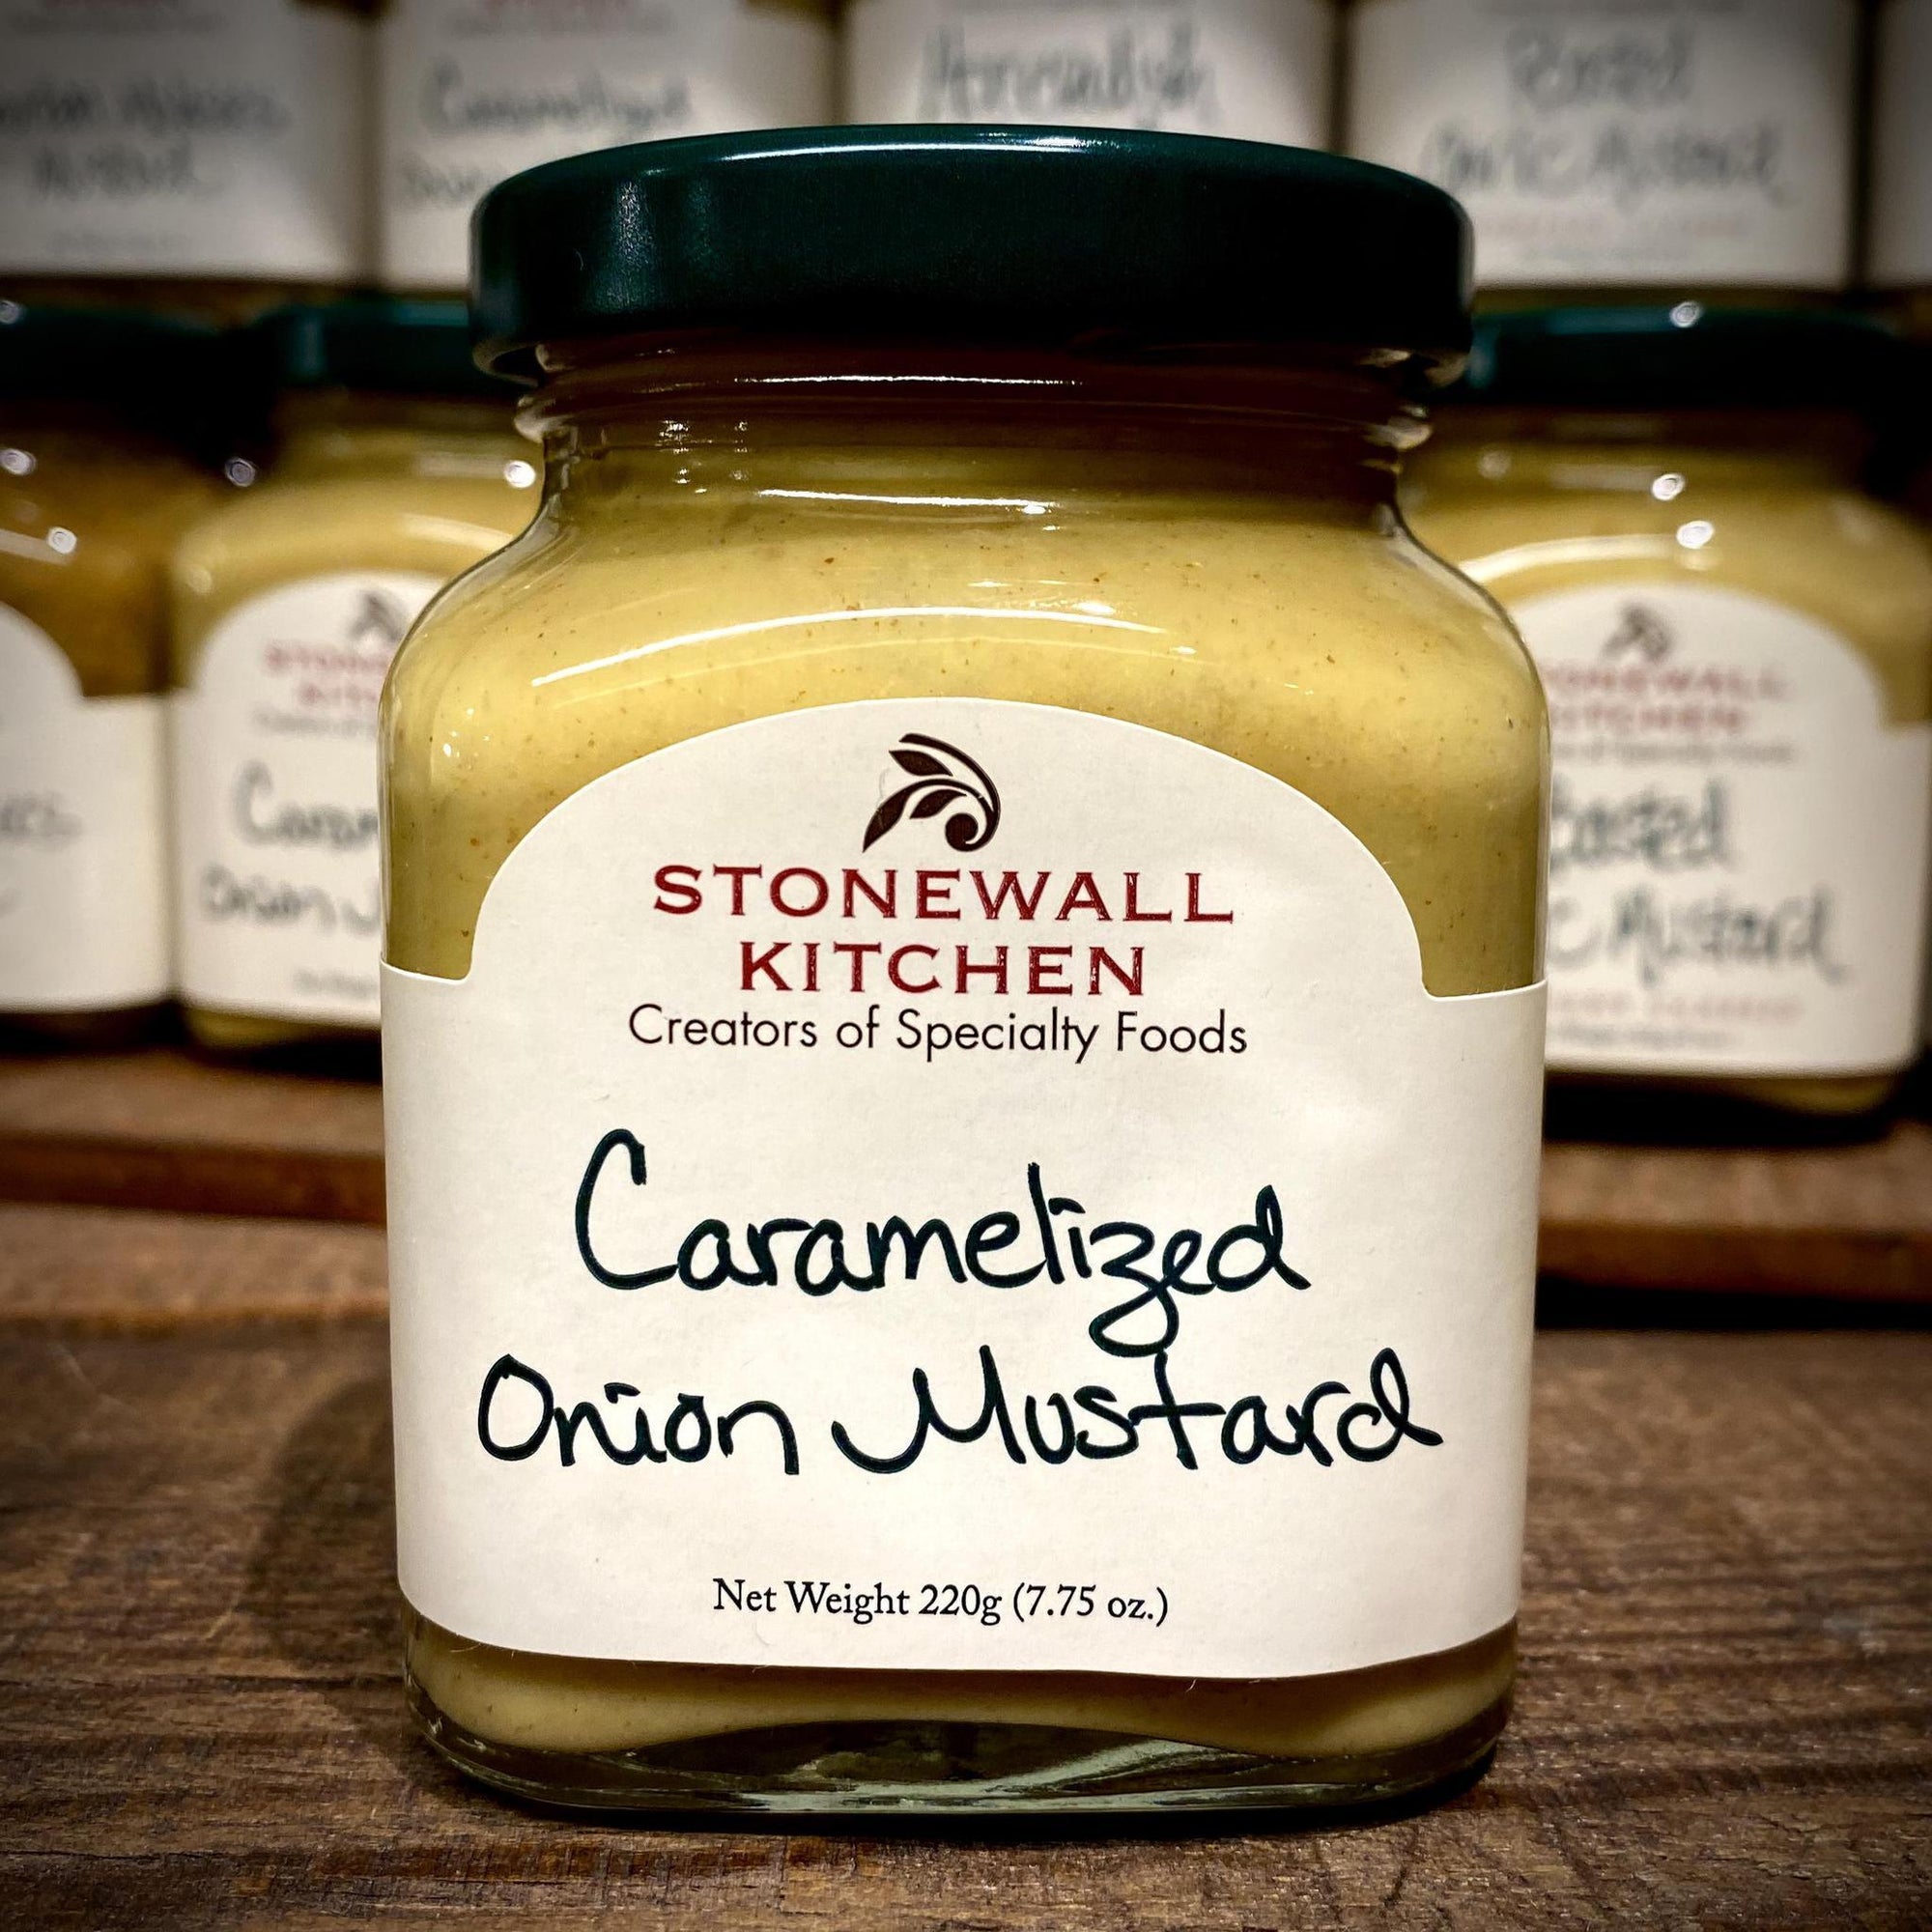 Stonewall Kitchen Caramelized Onion Mustard